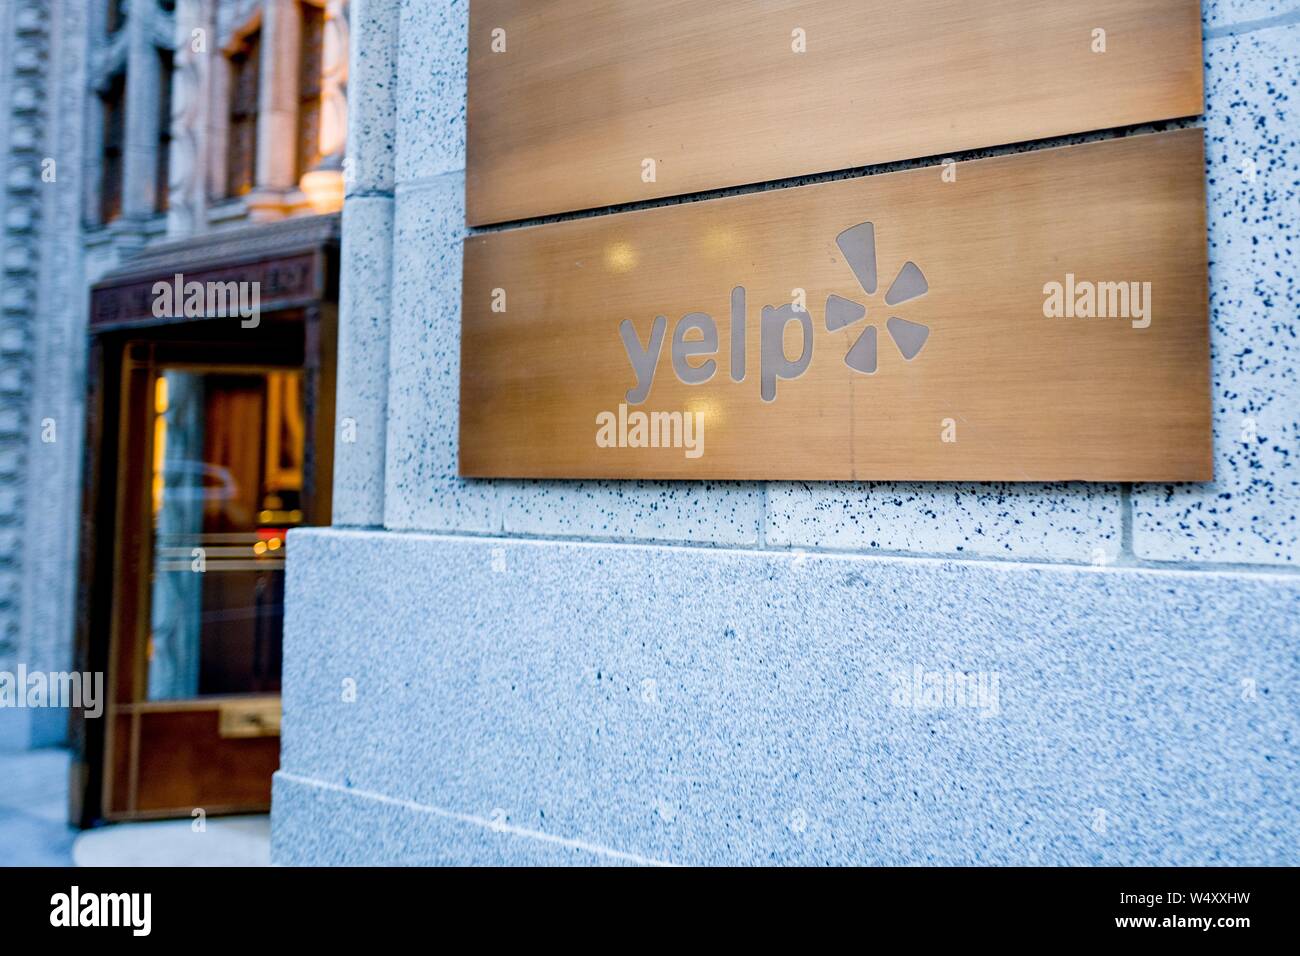 In der Nähe der Zeichen auf der Fassade am Hauptsitz von Reise- und Restaurant Bewertung Firma Yelp in San Francisco, Kalifornien, USA, 25. Dezember 2018. () Stockfoto